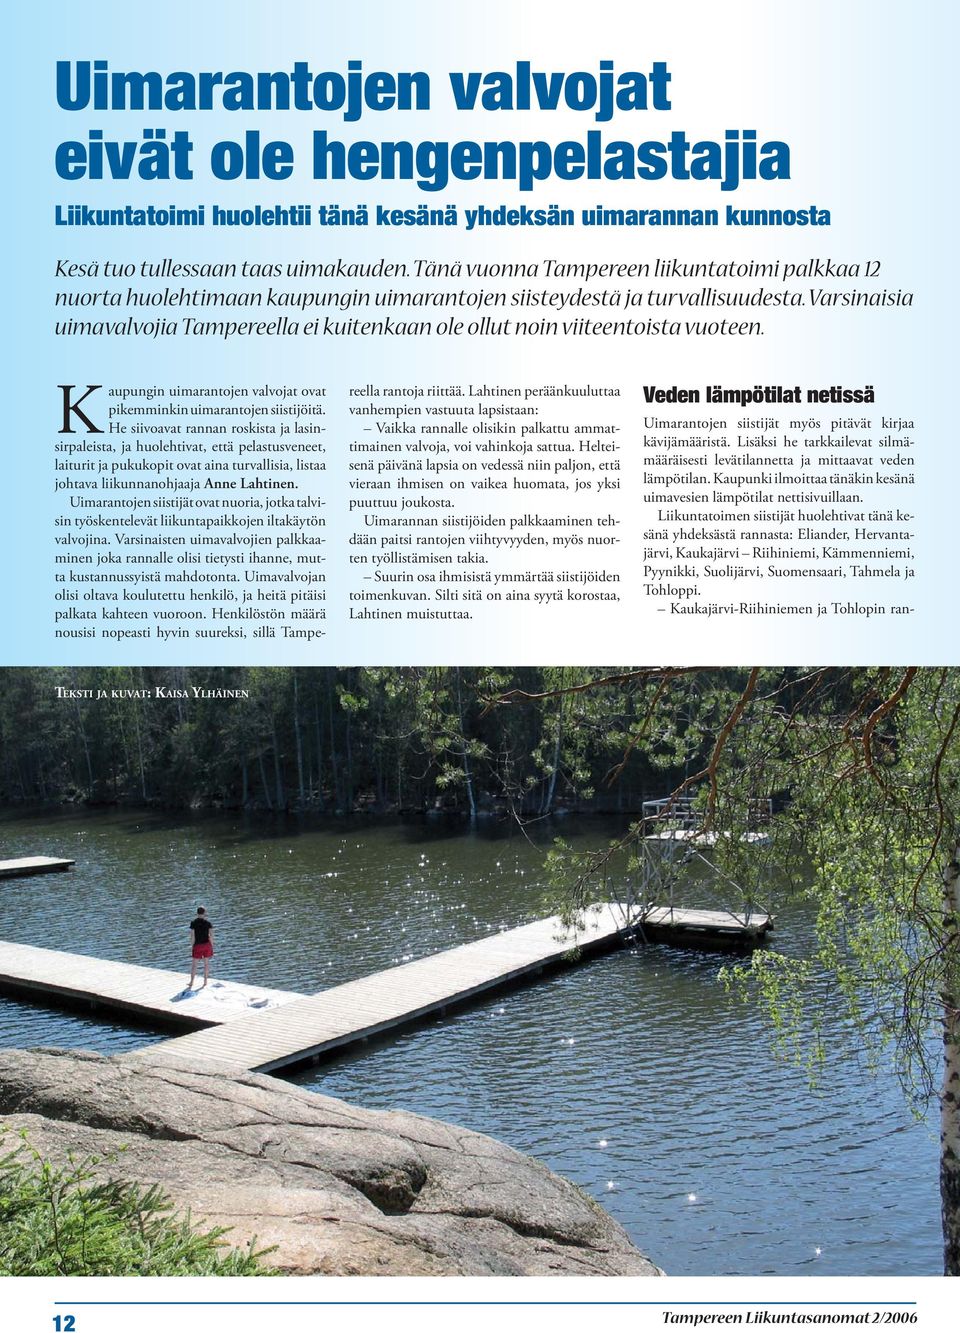 Varsinaisia uimavalvojia Tampereella ei kuitenkaan ole ollut noin viiteentoista vuoteen. Kaupungin uimarantojen valvojat ovat pikemminkin uimarantojen siistijöitä.